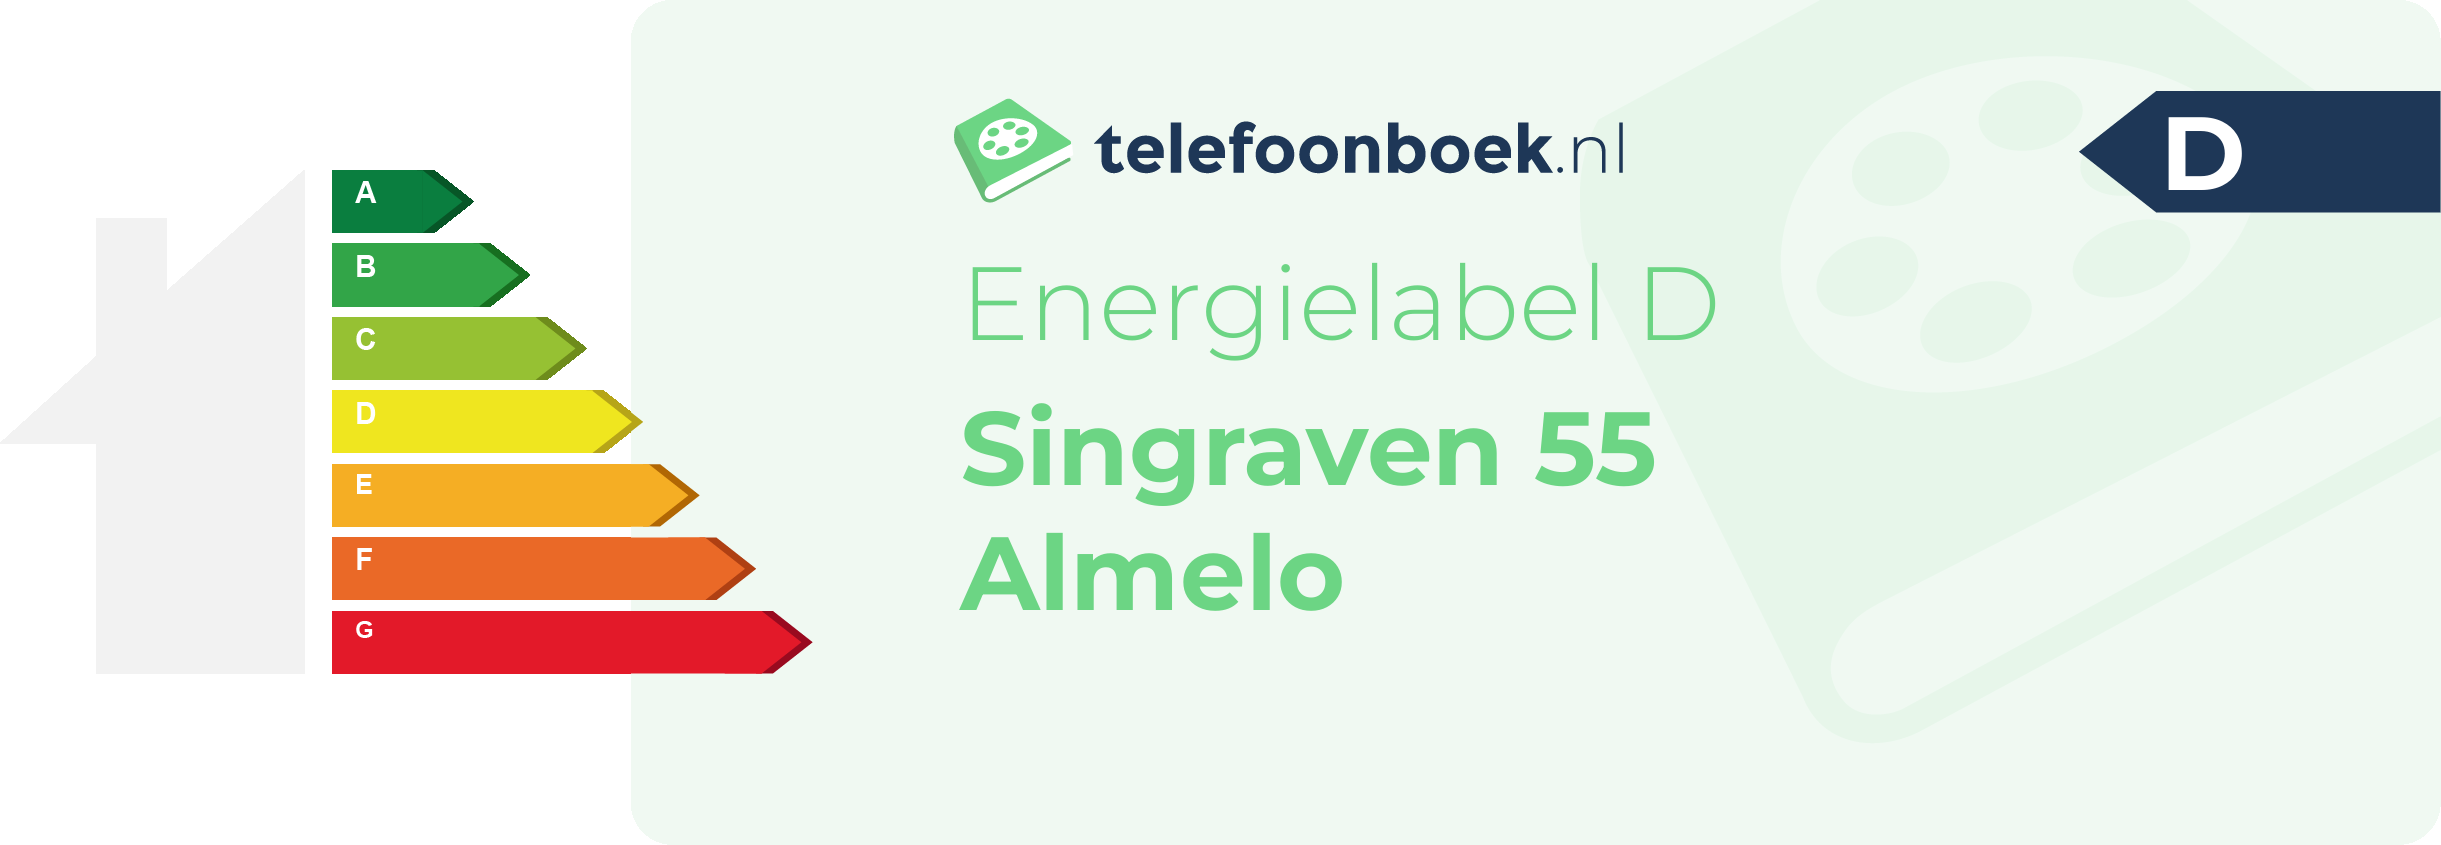 Energielabel Singraven 55 Almelo